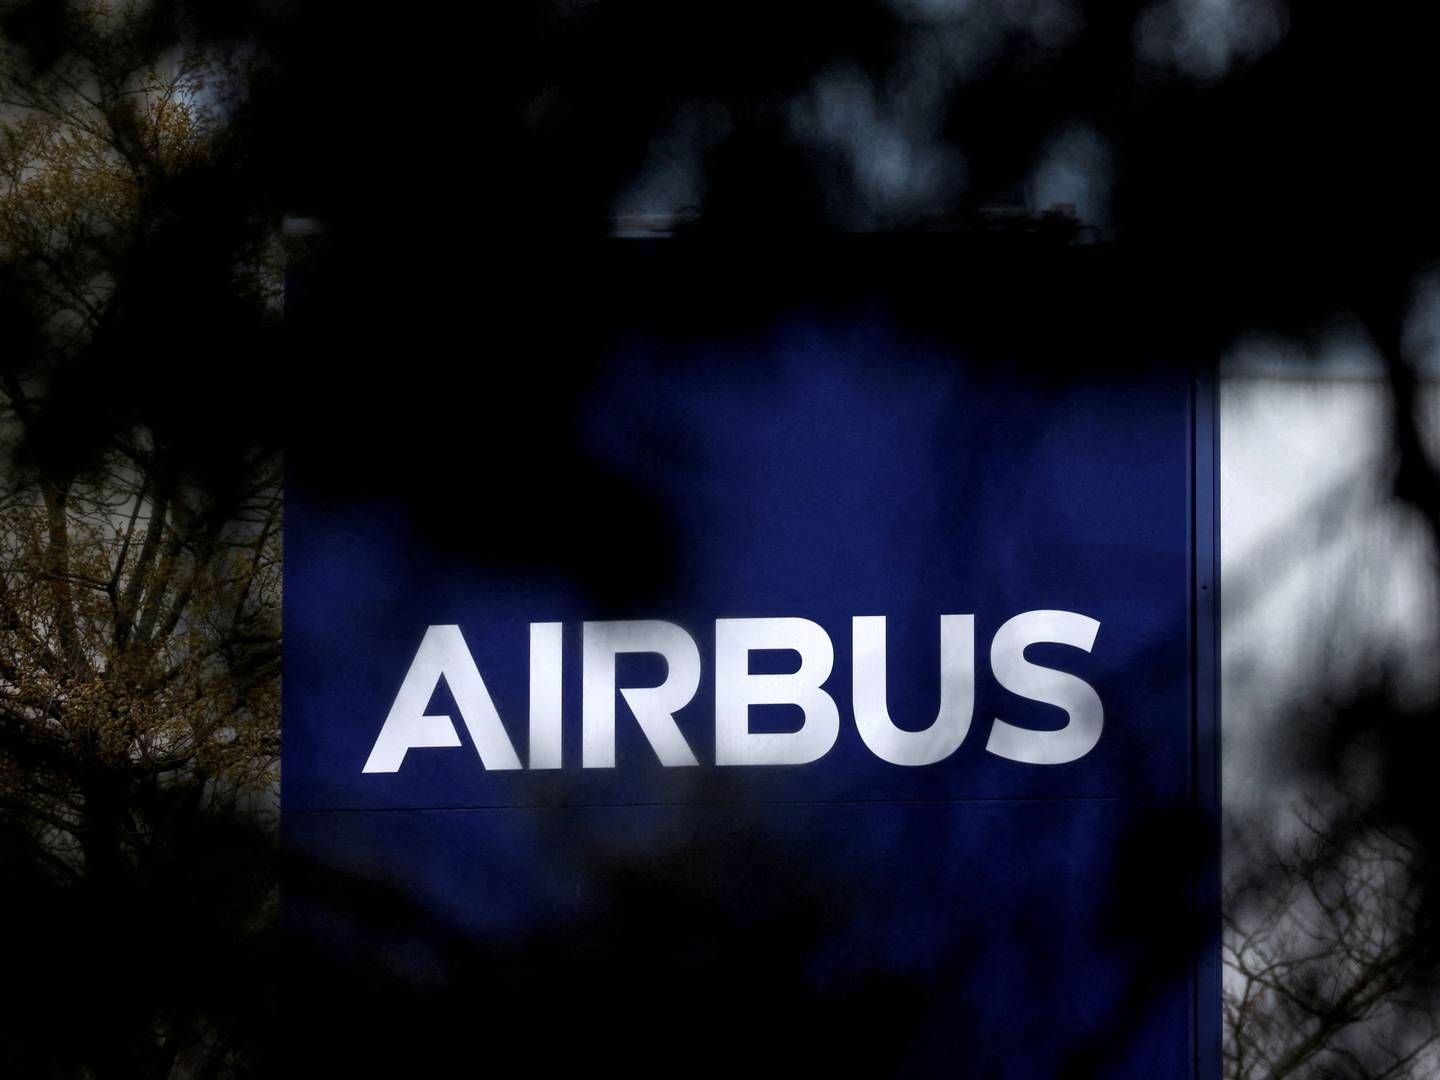 Foto: Airbus